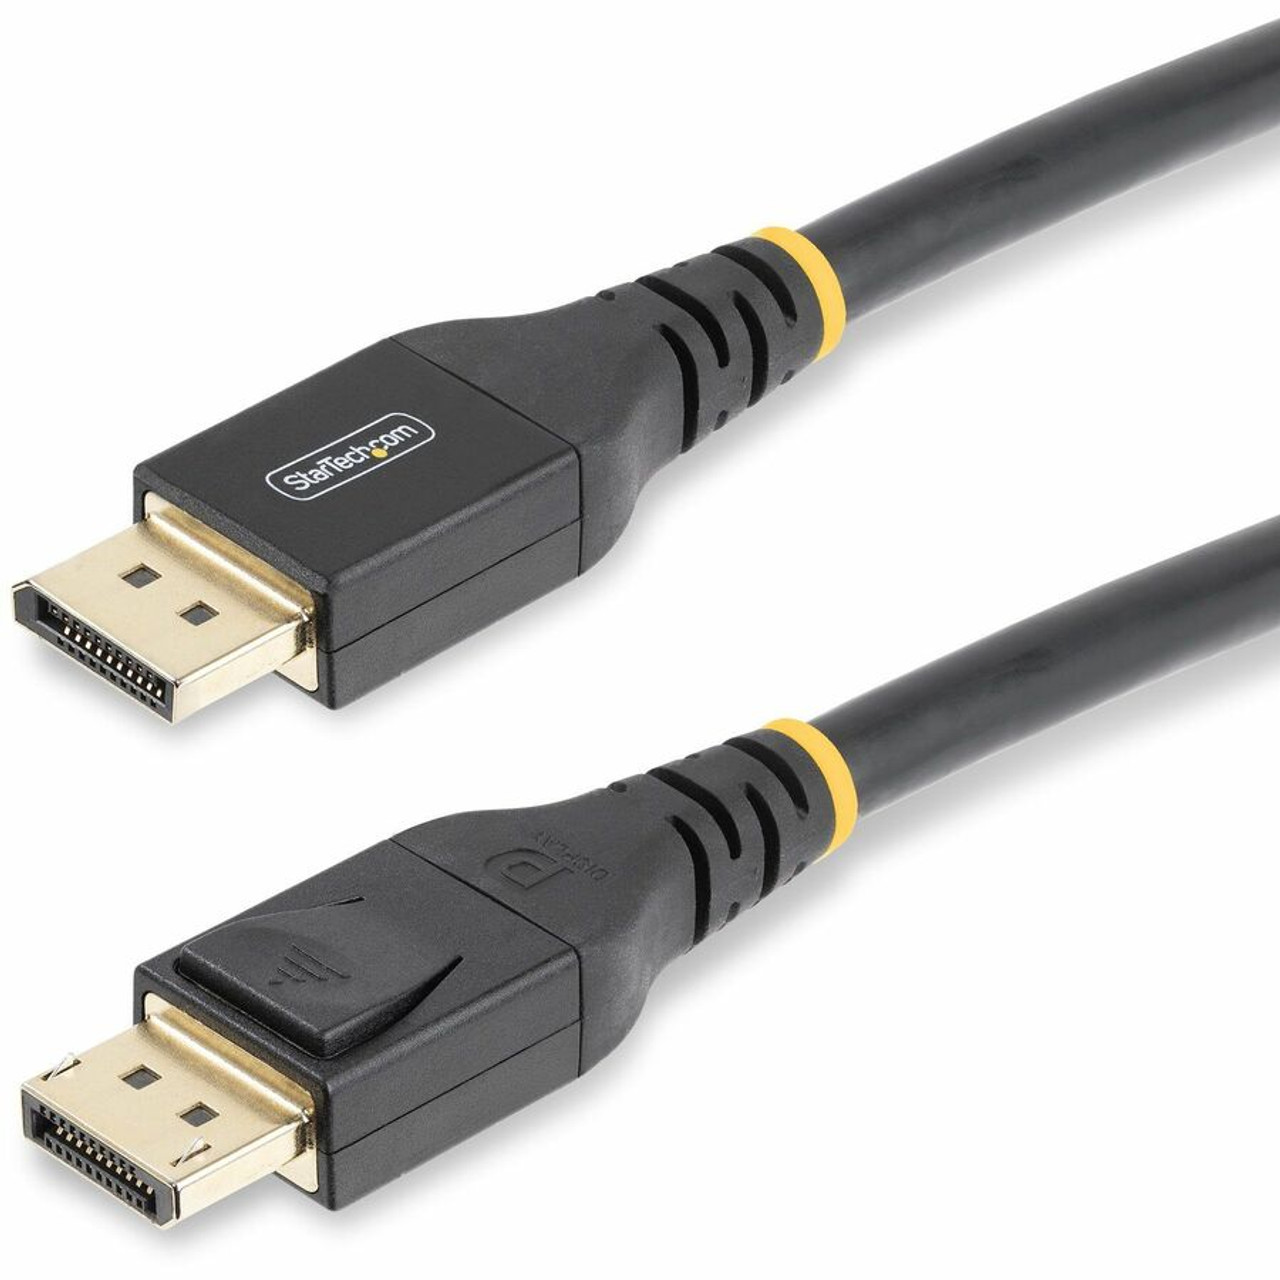 VESA Certified DisplayPort 1.4 Cable - 6 ft.